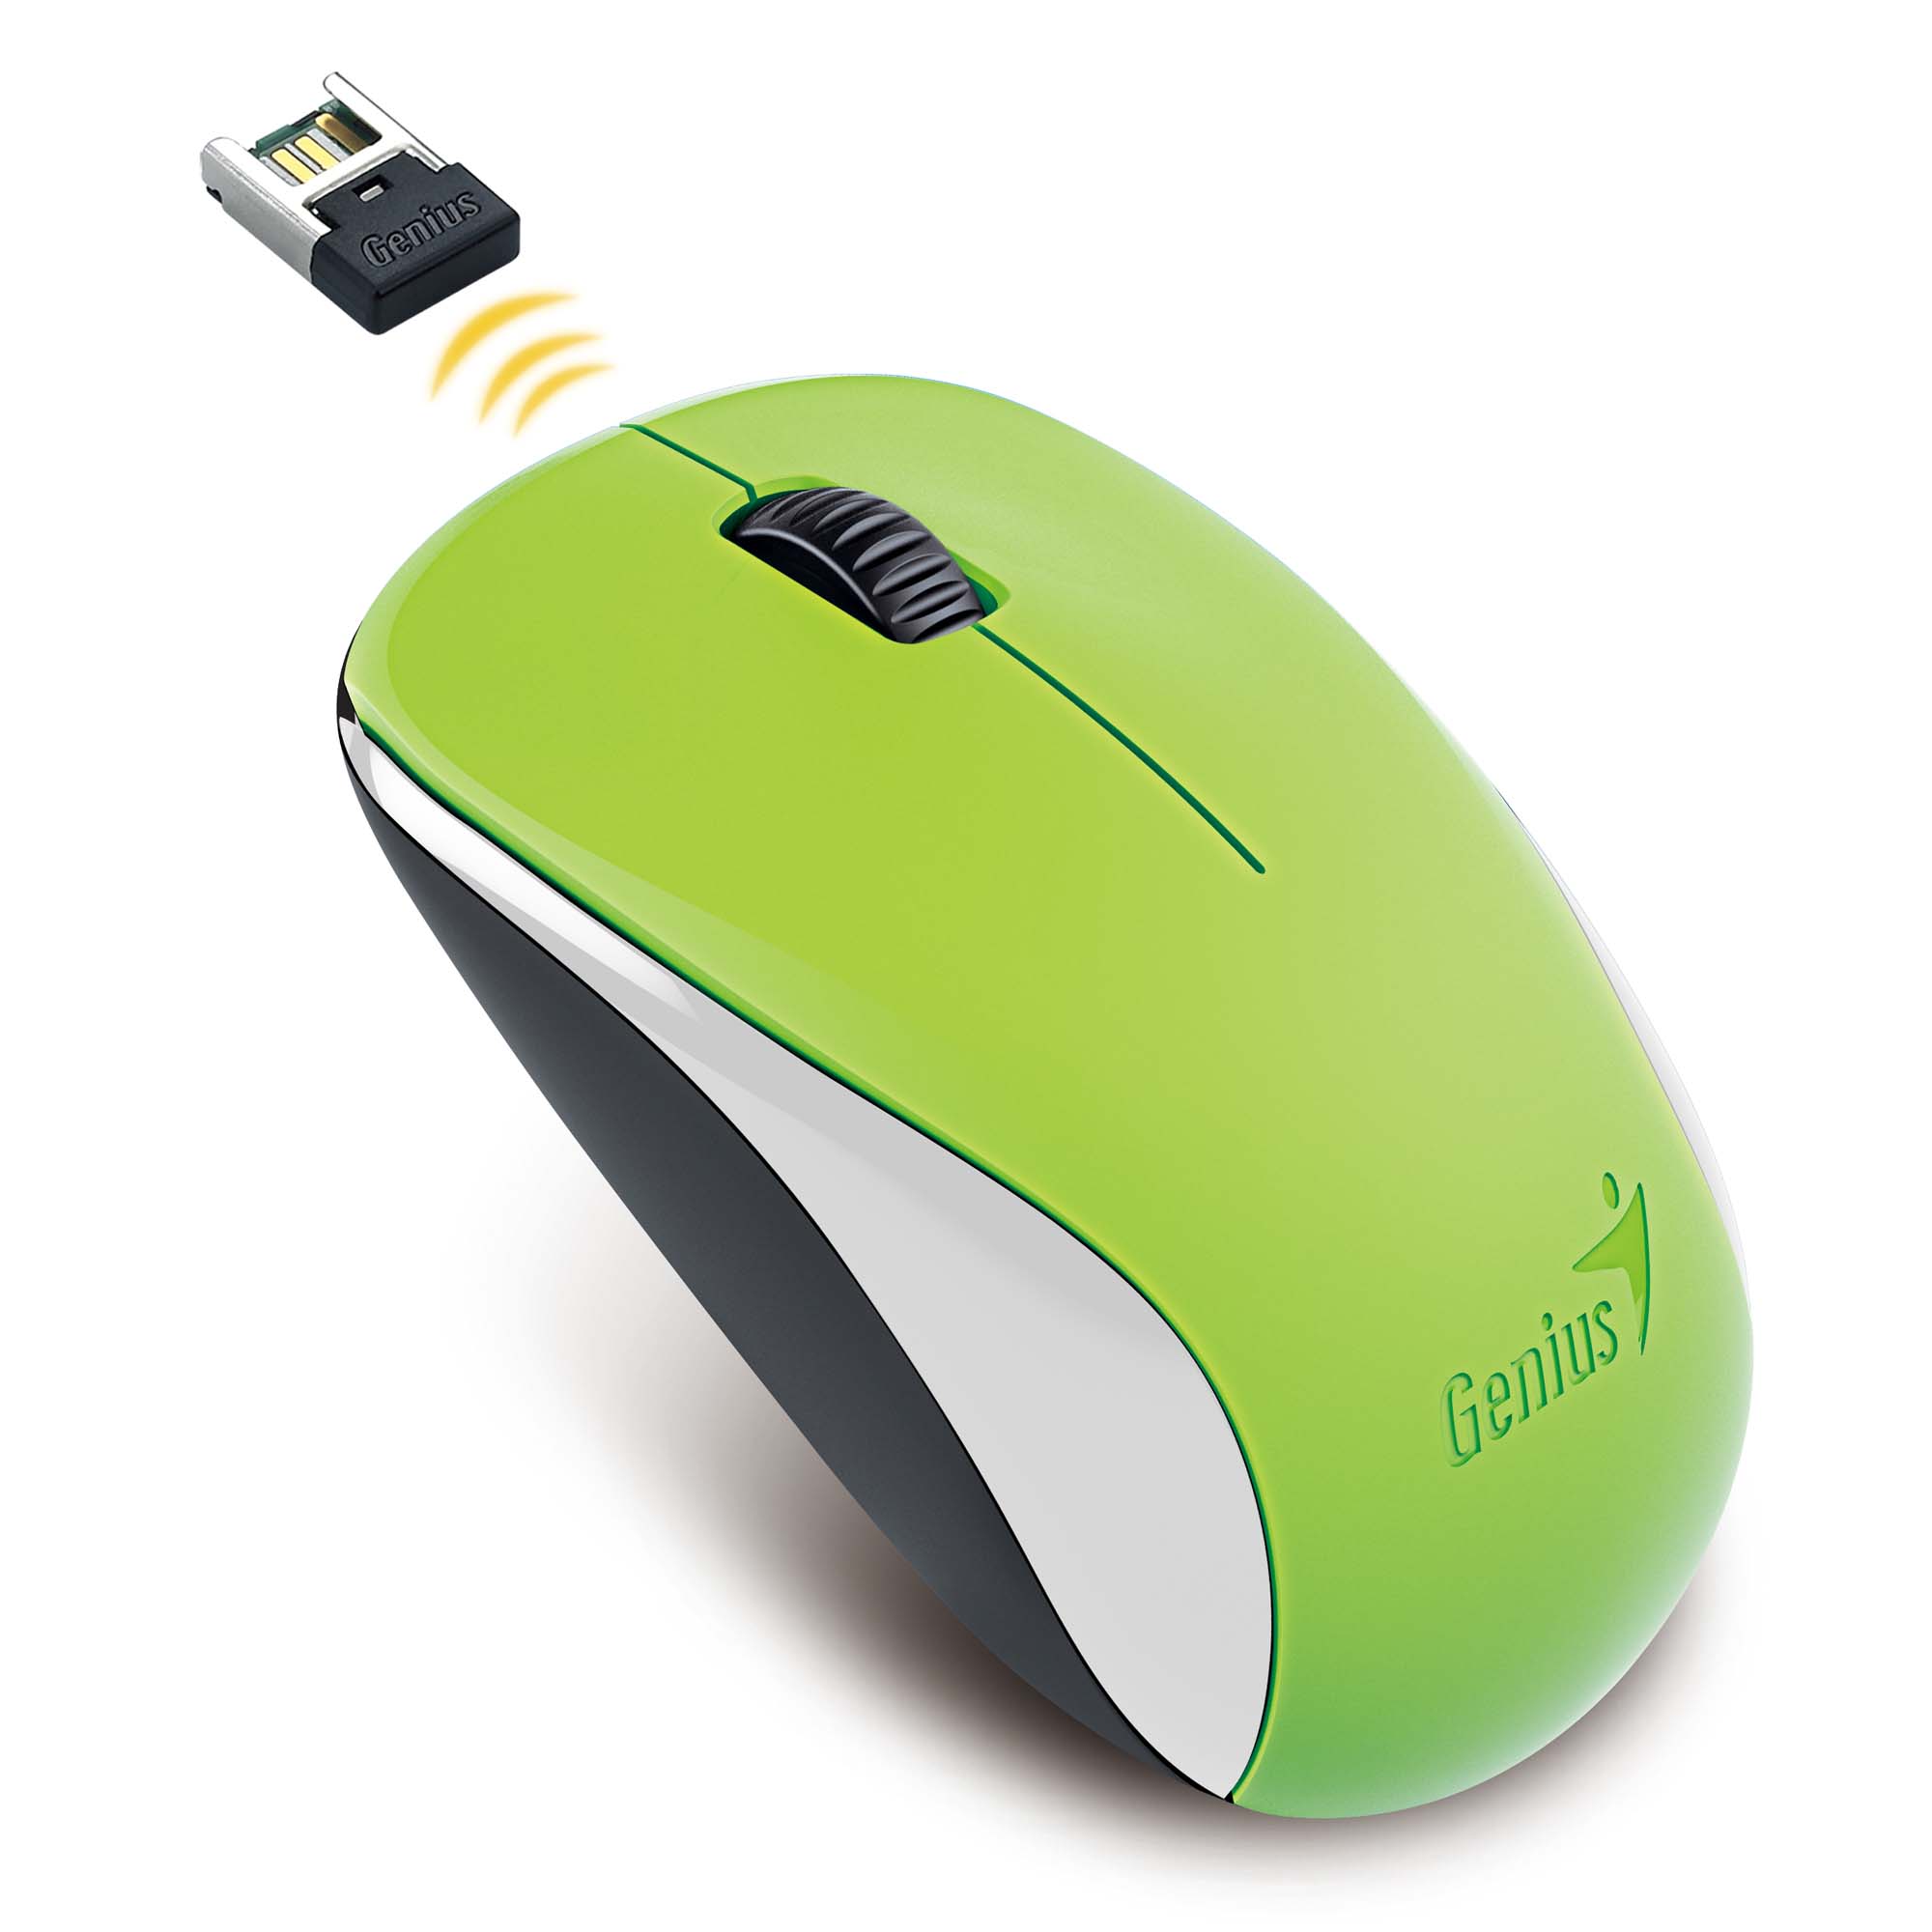 Мышь Genius NX-7000 оптическая, беспроводная, green, USB